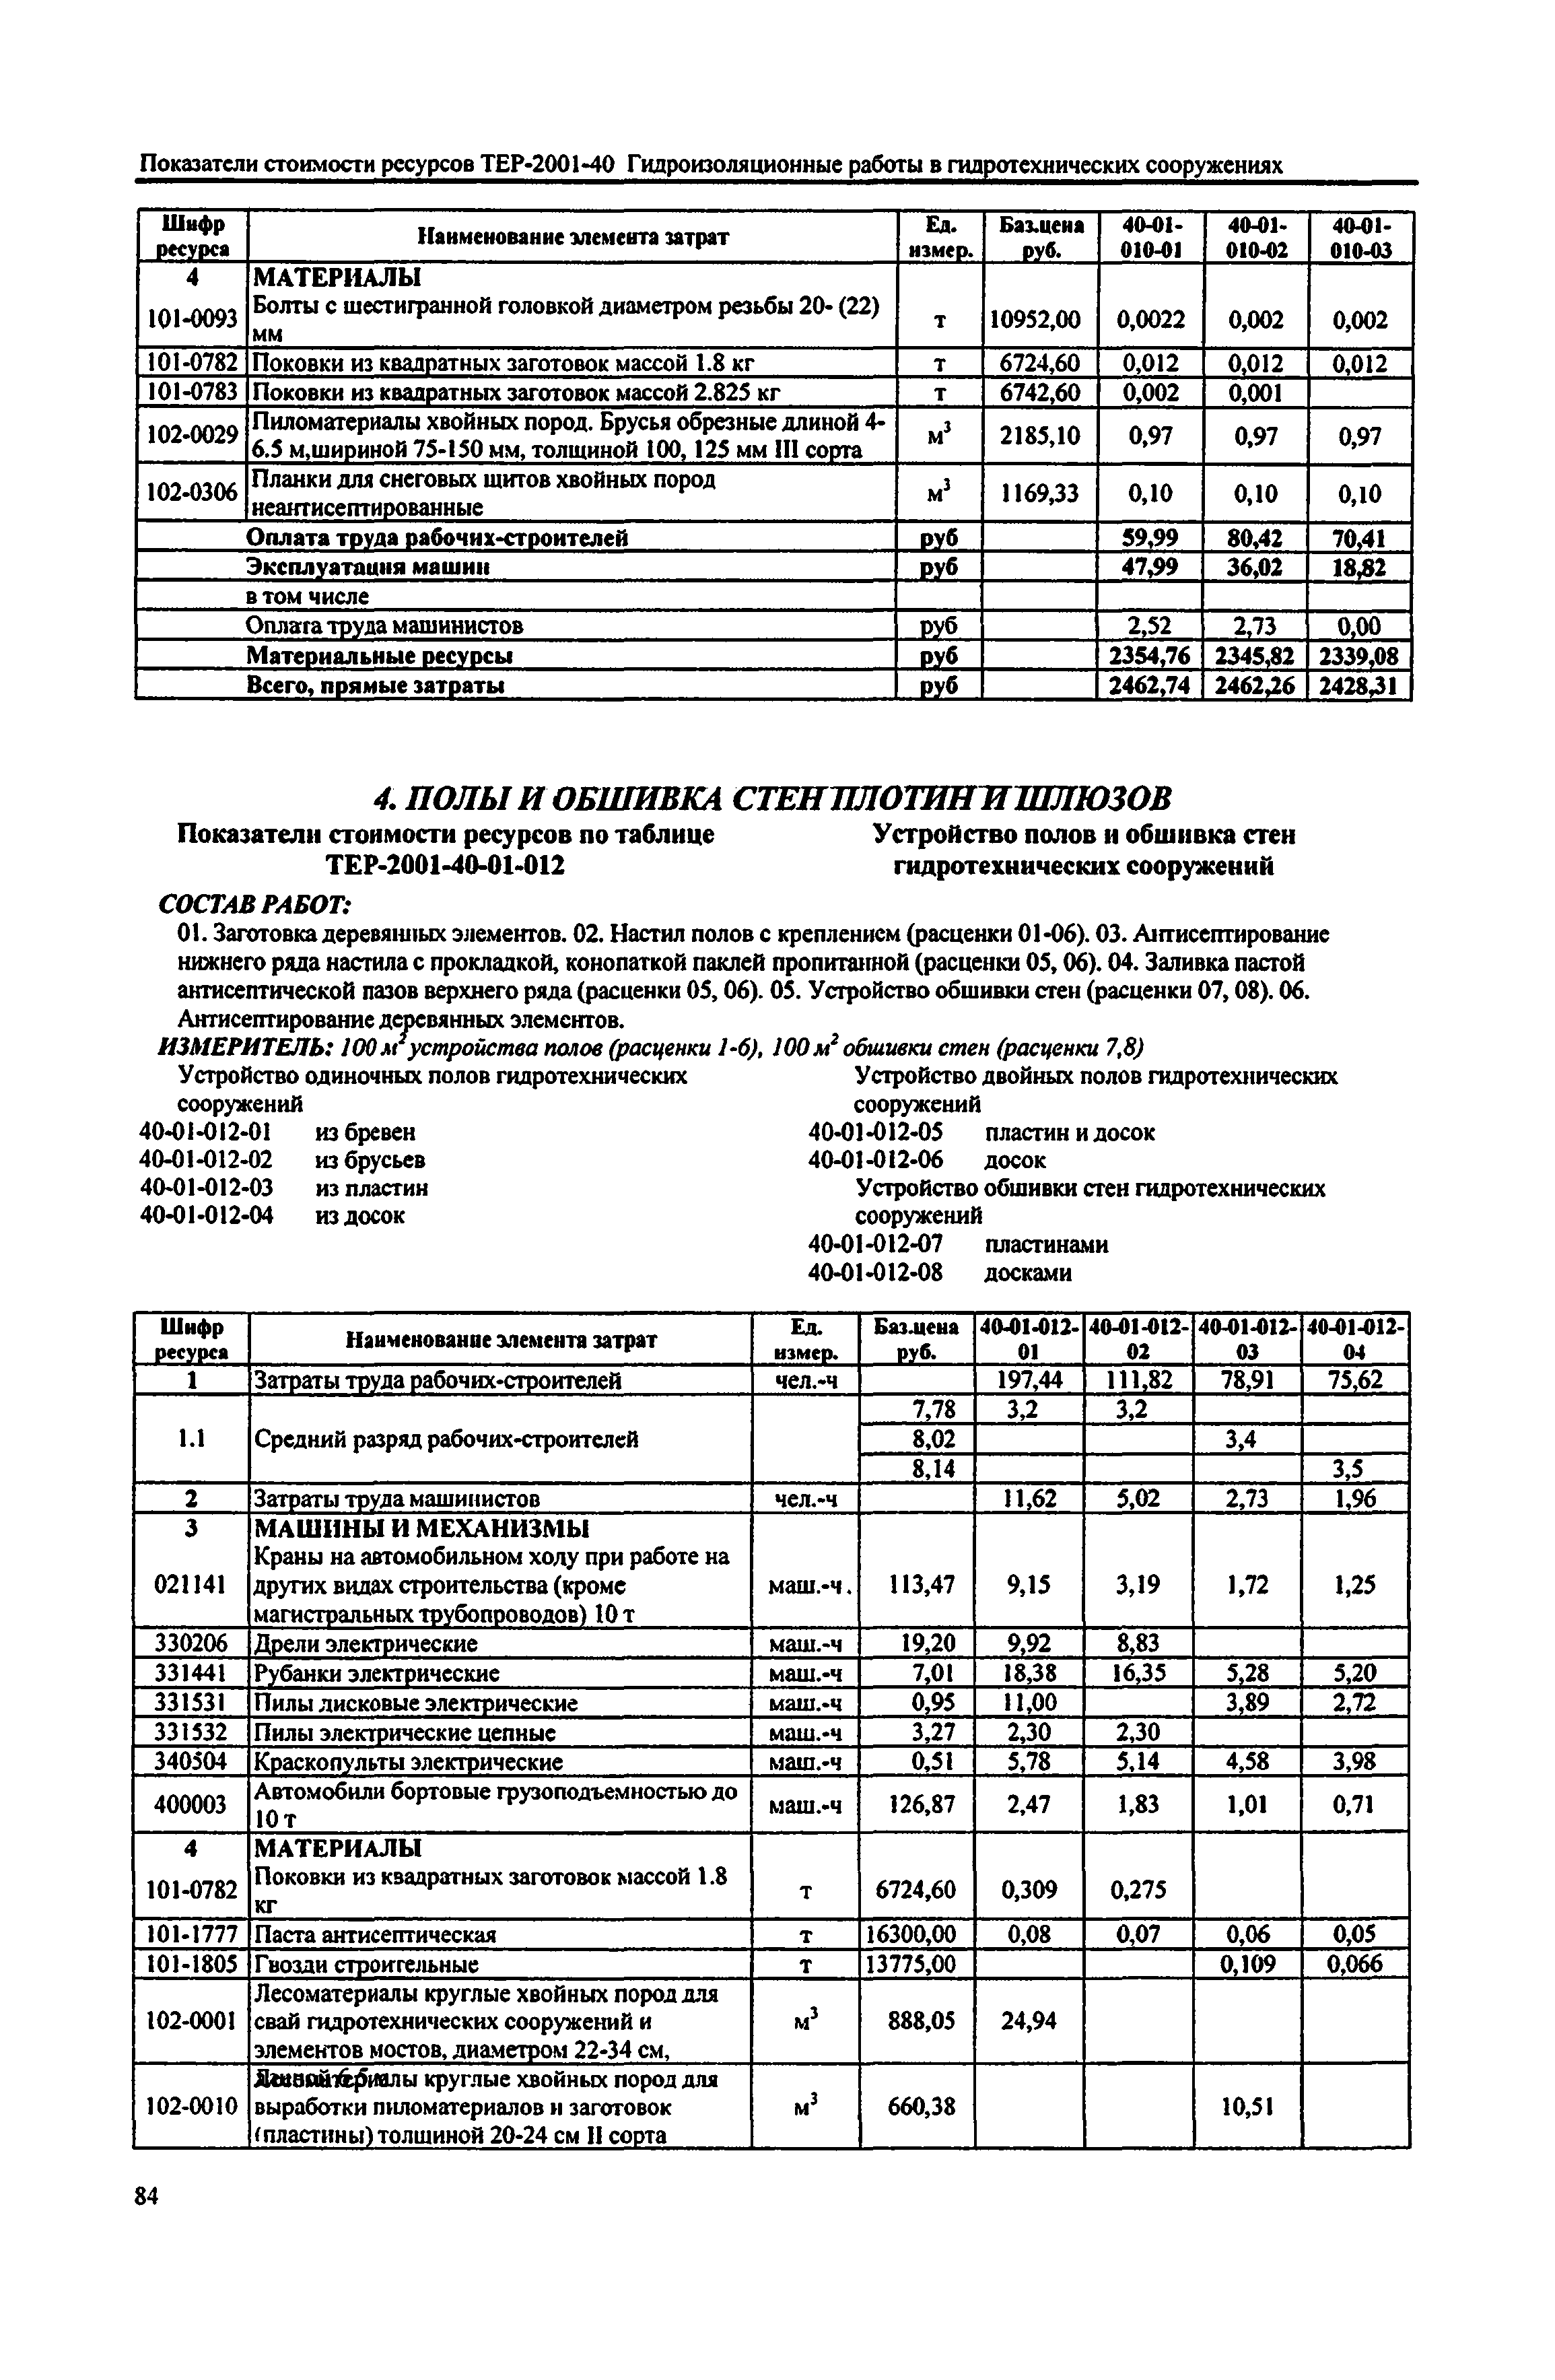 Справочное пособие к ТЕР 81-02-40-2001